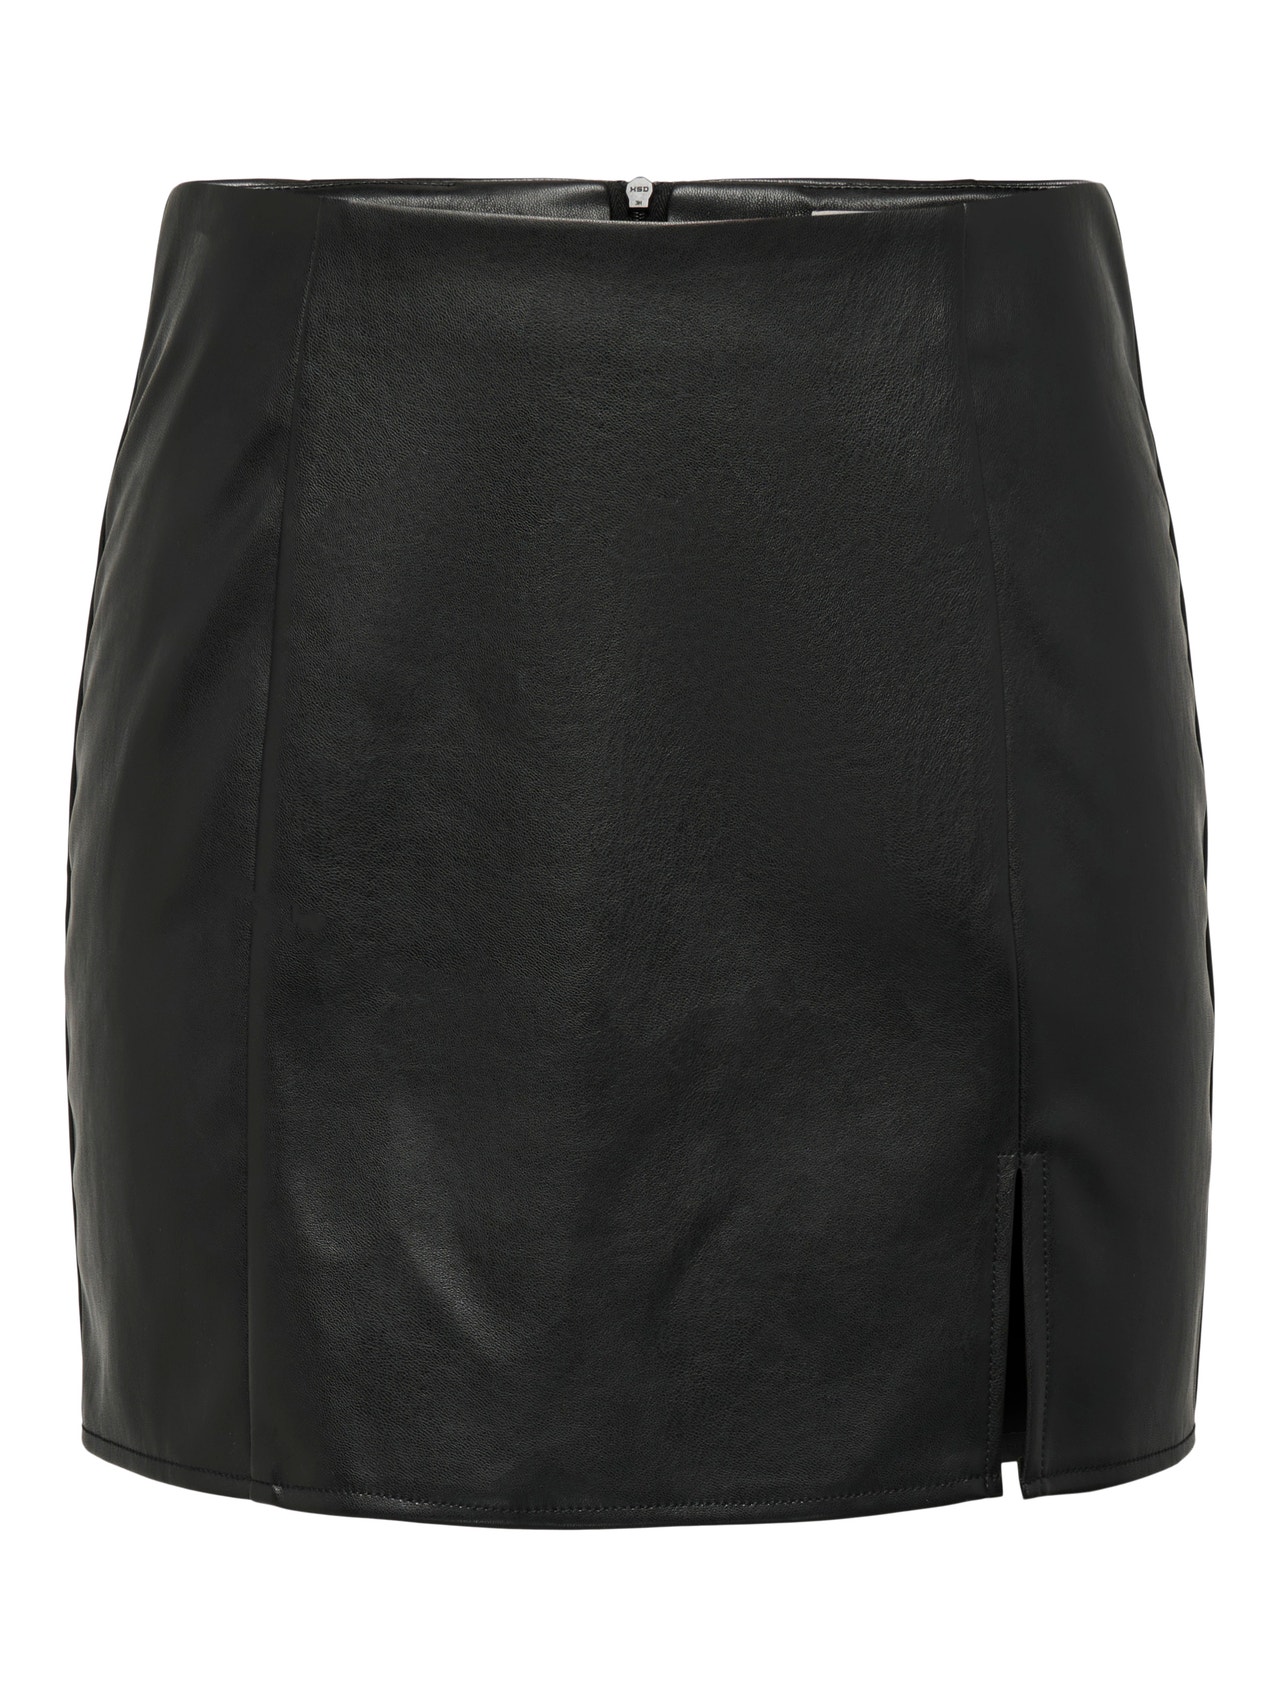 ONLY Mini skirt with slit -Black - 15267185